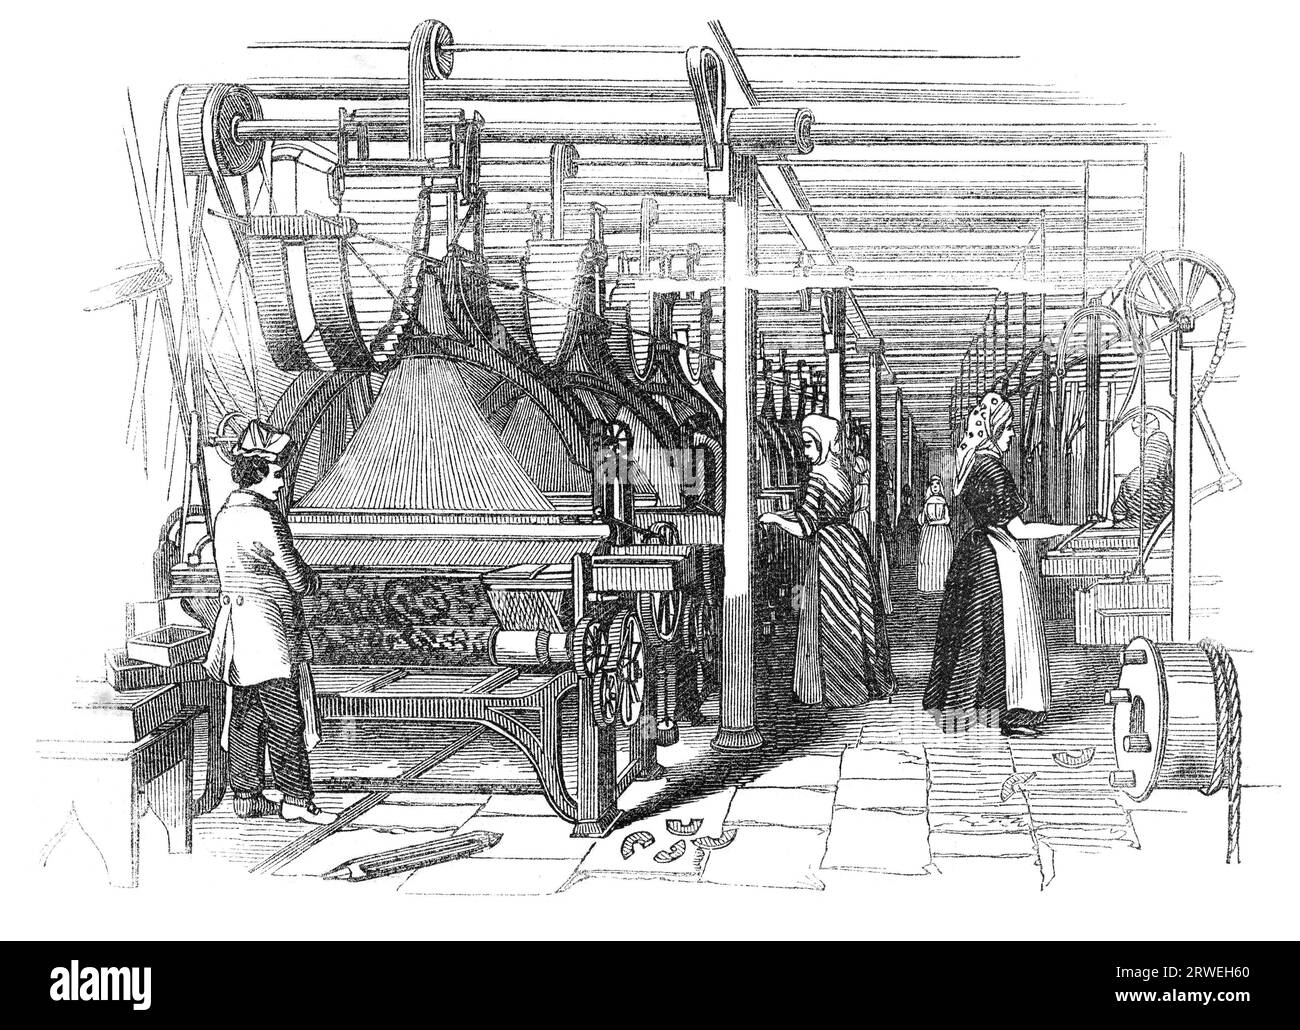 Un giorno alle fabbriche di Yorkshire Worsted: Jacouard Weaving Shed, Akroyds Worsted Factory. Illustrazione di una rivista inglese stampata nel 1844 Foto Stock